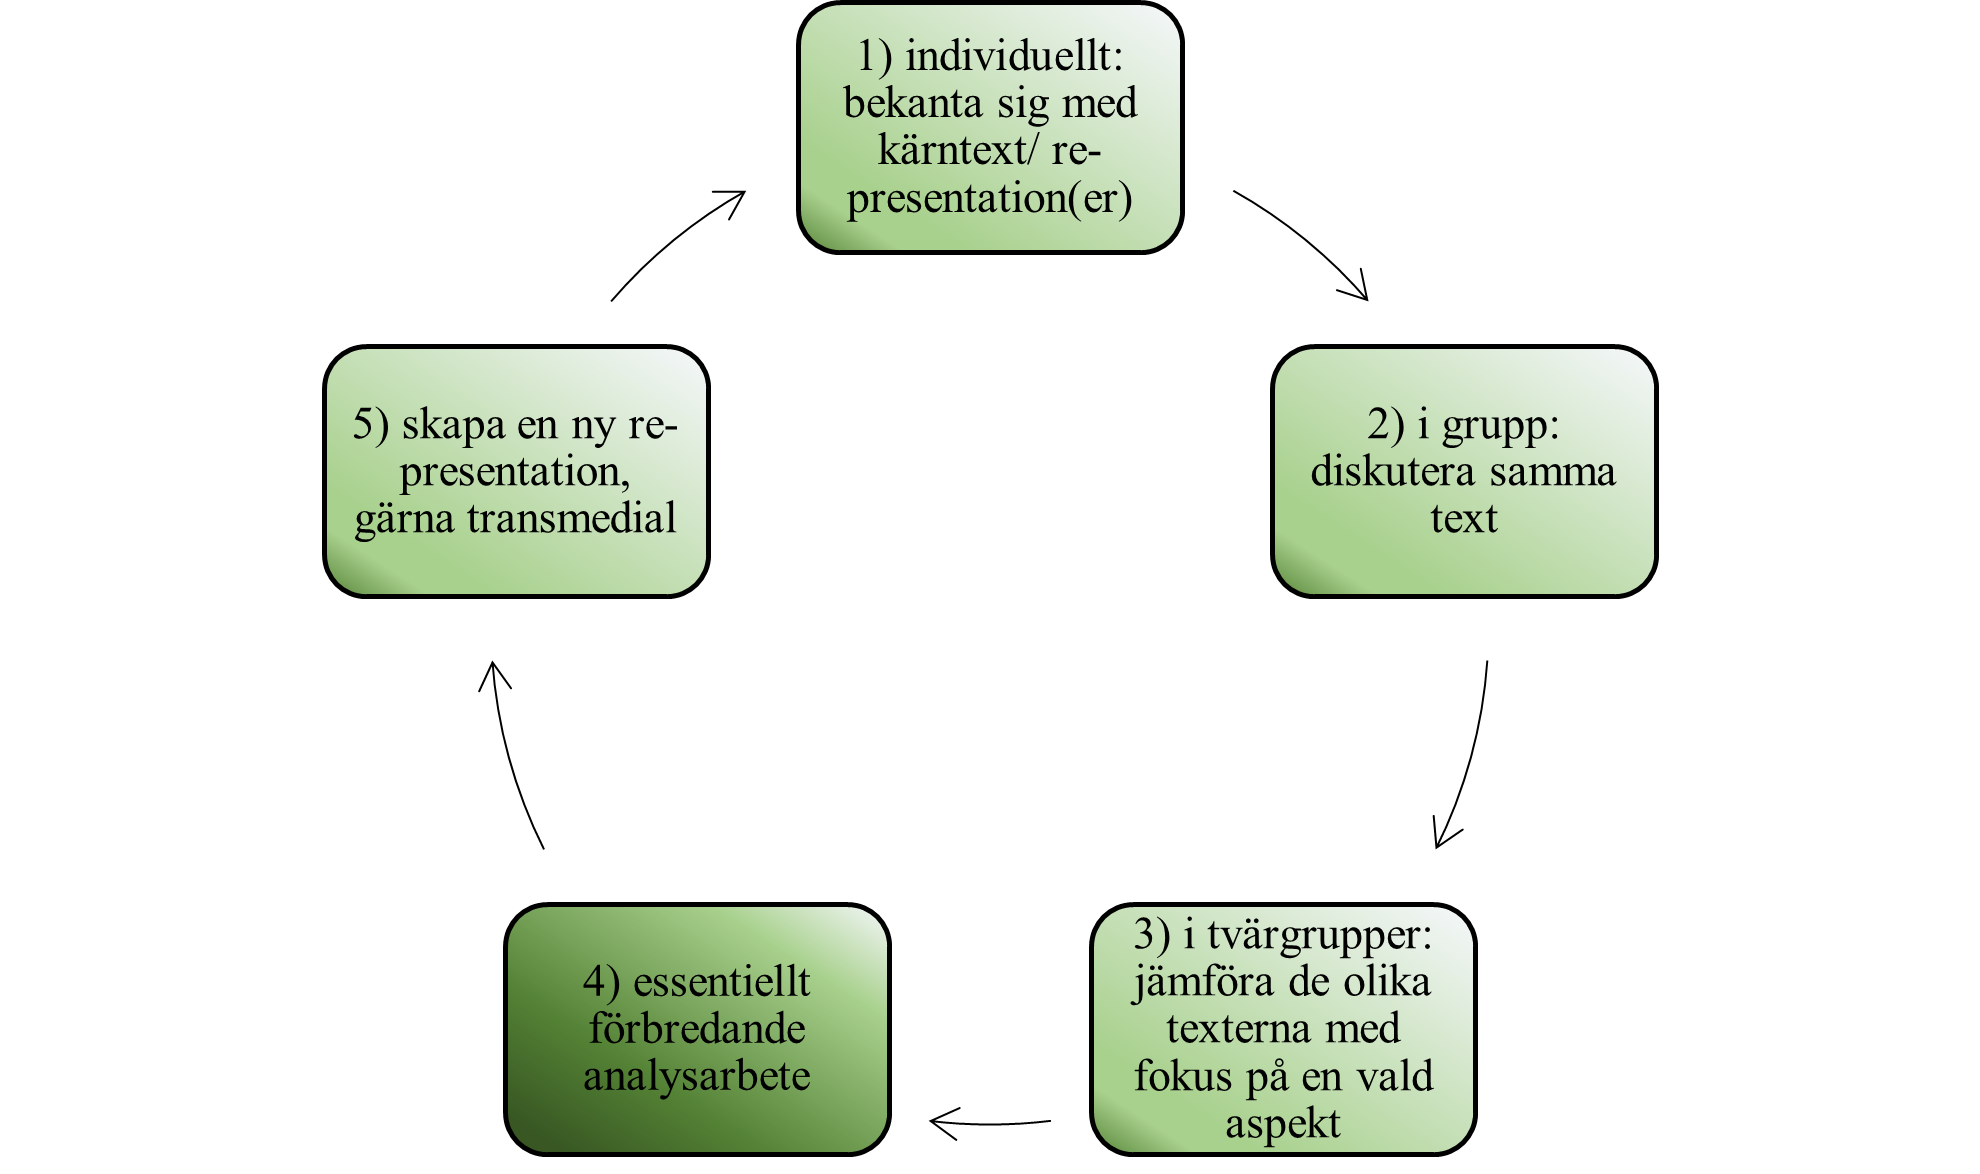 1) individuellt: bekanta sig med kärntext/ re-presentation(er)  2) i grupp: diskutera samma text  3) i tvärgrupper: jämföra de olika texterna med fokus på en vald aspekt  4) essentiellt förbredande analysarbete  5) skapa en ny re-presentation, gärna transmedial